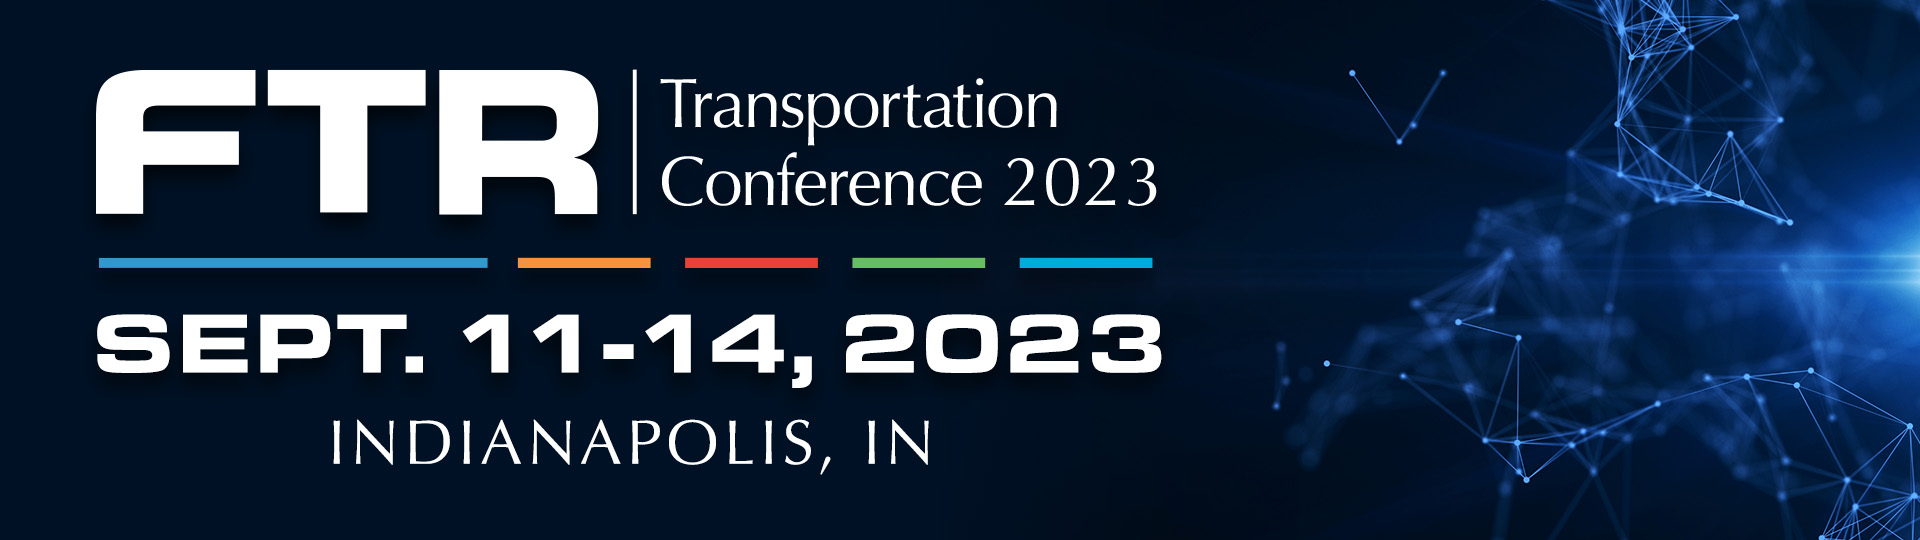 FTR_2023 Conference_header banner(1)